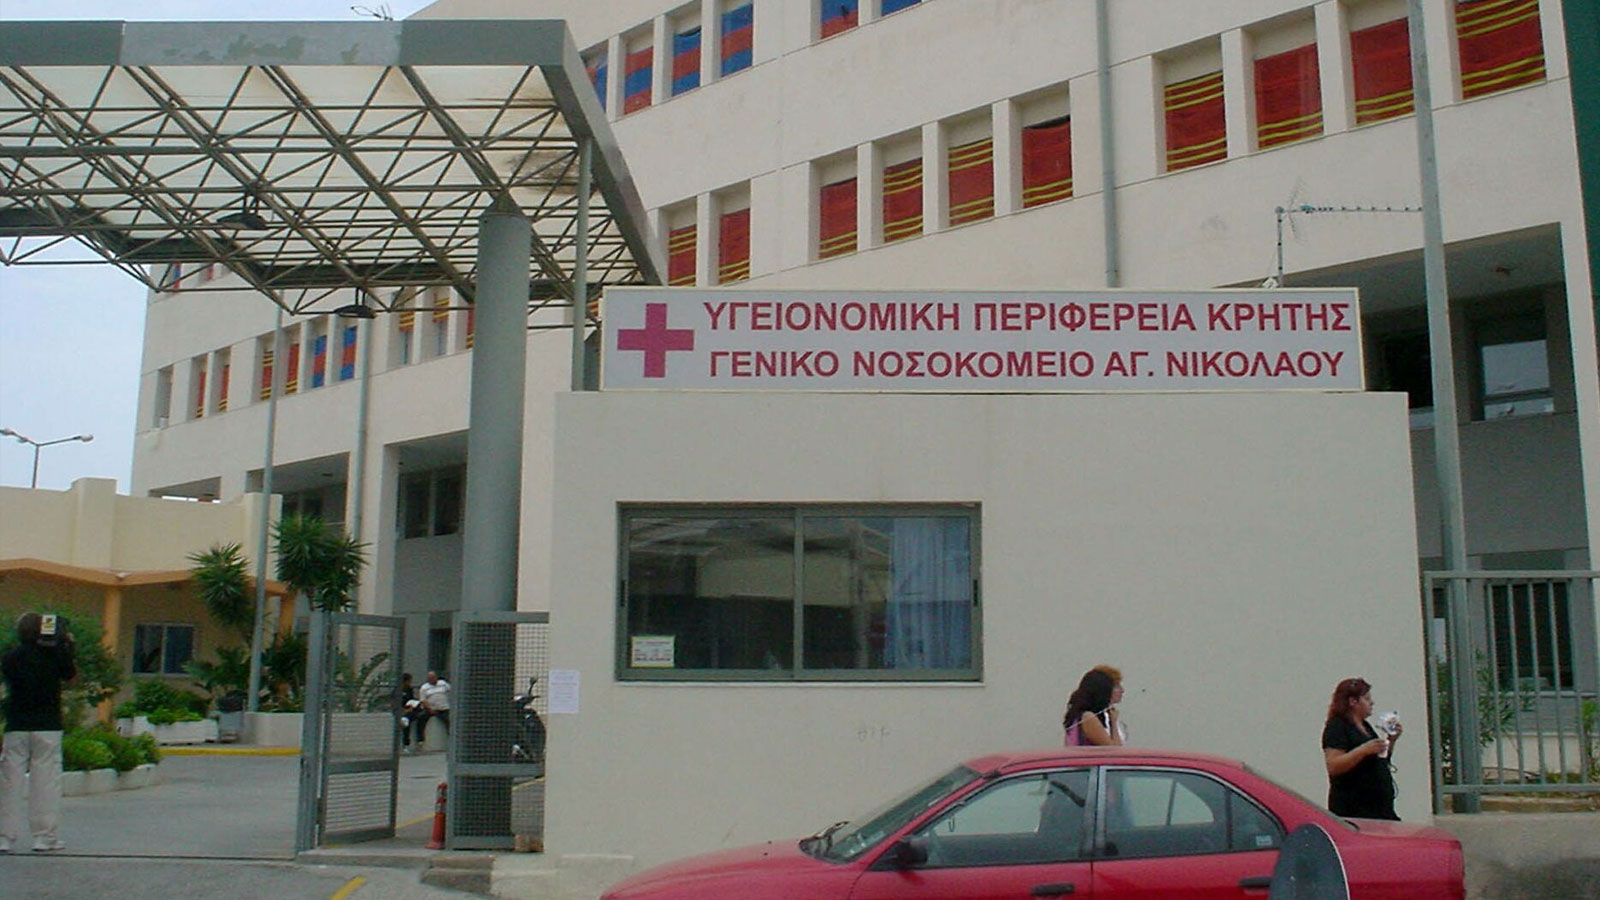 Κρήτη: Συνελήφθη 38χρονος που έκλεψε πορτοφόλι γυναίκας στο νοσοκομείο Αγίου Νικολάου